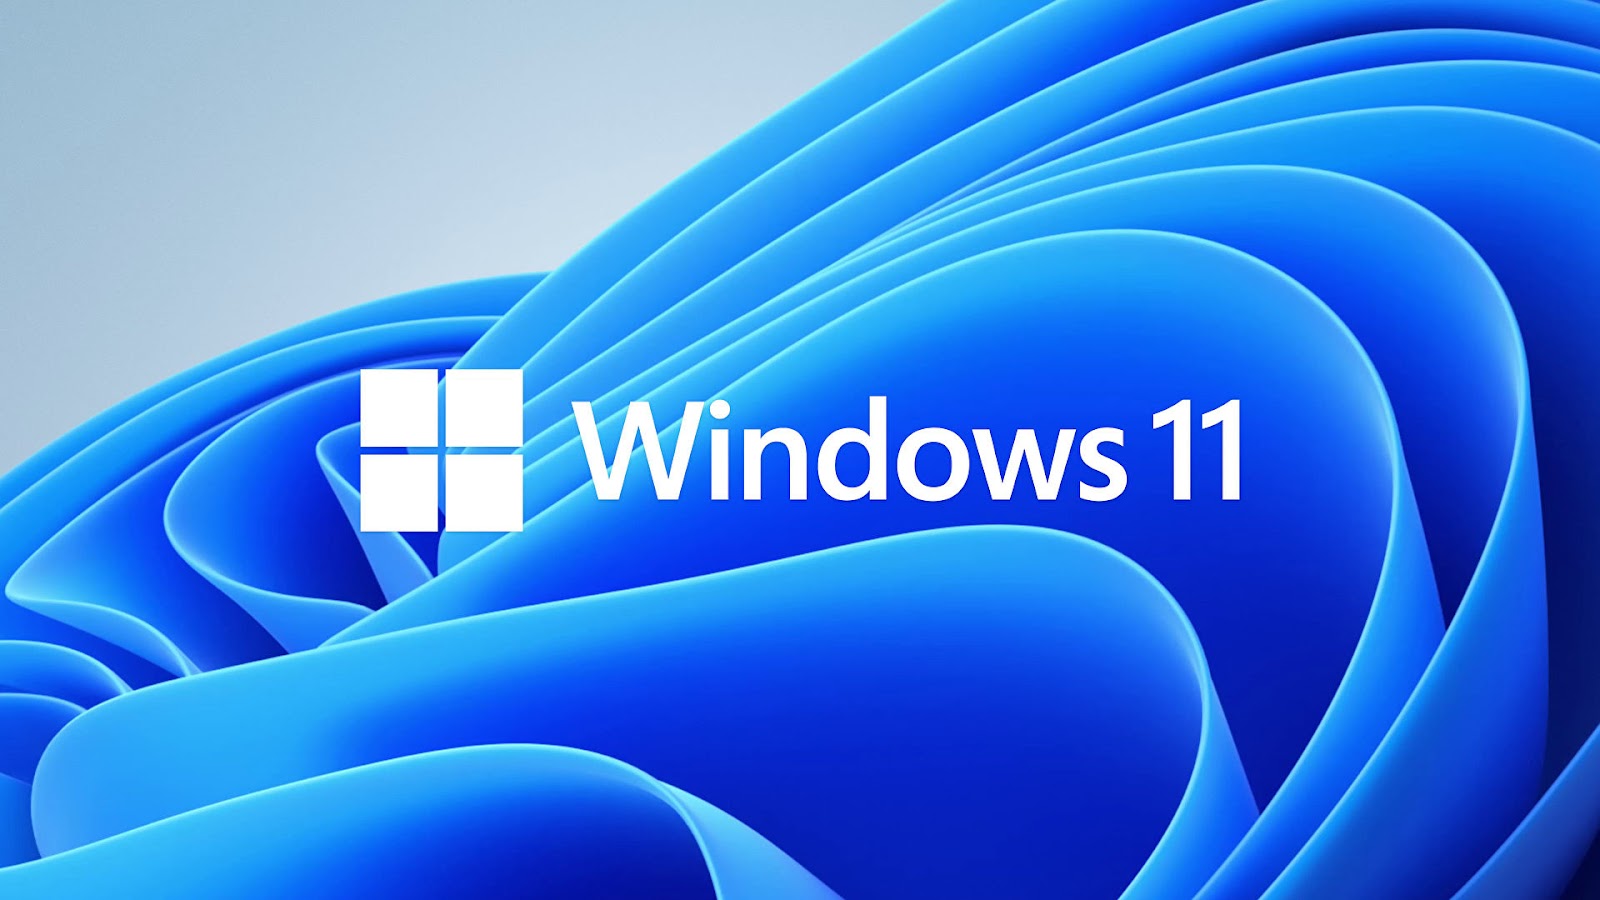 Mọi người đều có thể nâng cấp từ Windows 10 lên Windows 11 miễn phí | Nguồn: Microsoft